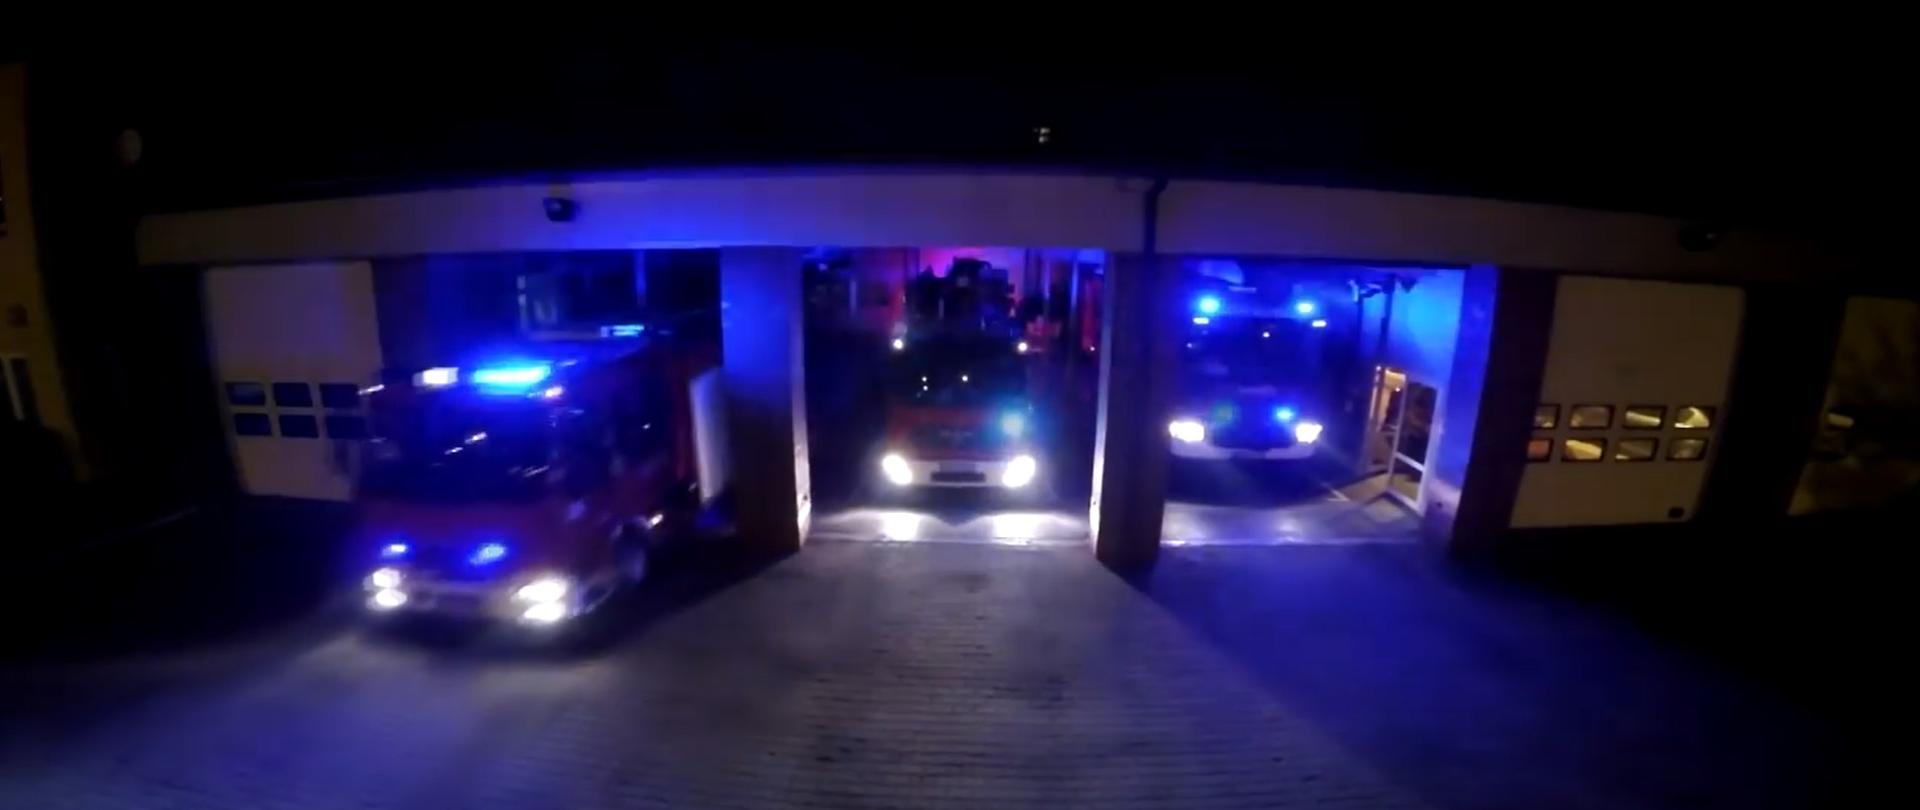 Zdjęcie przedstawia wyjeżdżające zastępy z Komendy Miejskiej Państwowej Straży Pożarnej w Świętochłowicach. Zdjęcie wykonane w porze nocnej. Samochody pożarnicze mają włączone niebieskie światła alarmowe.